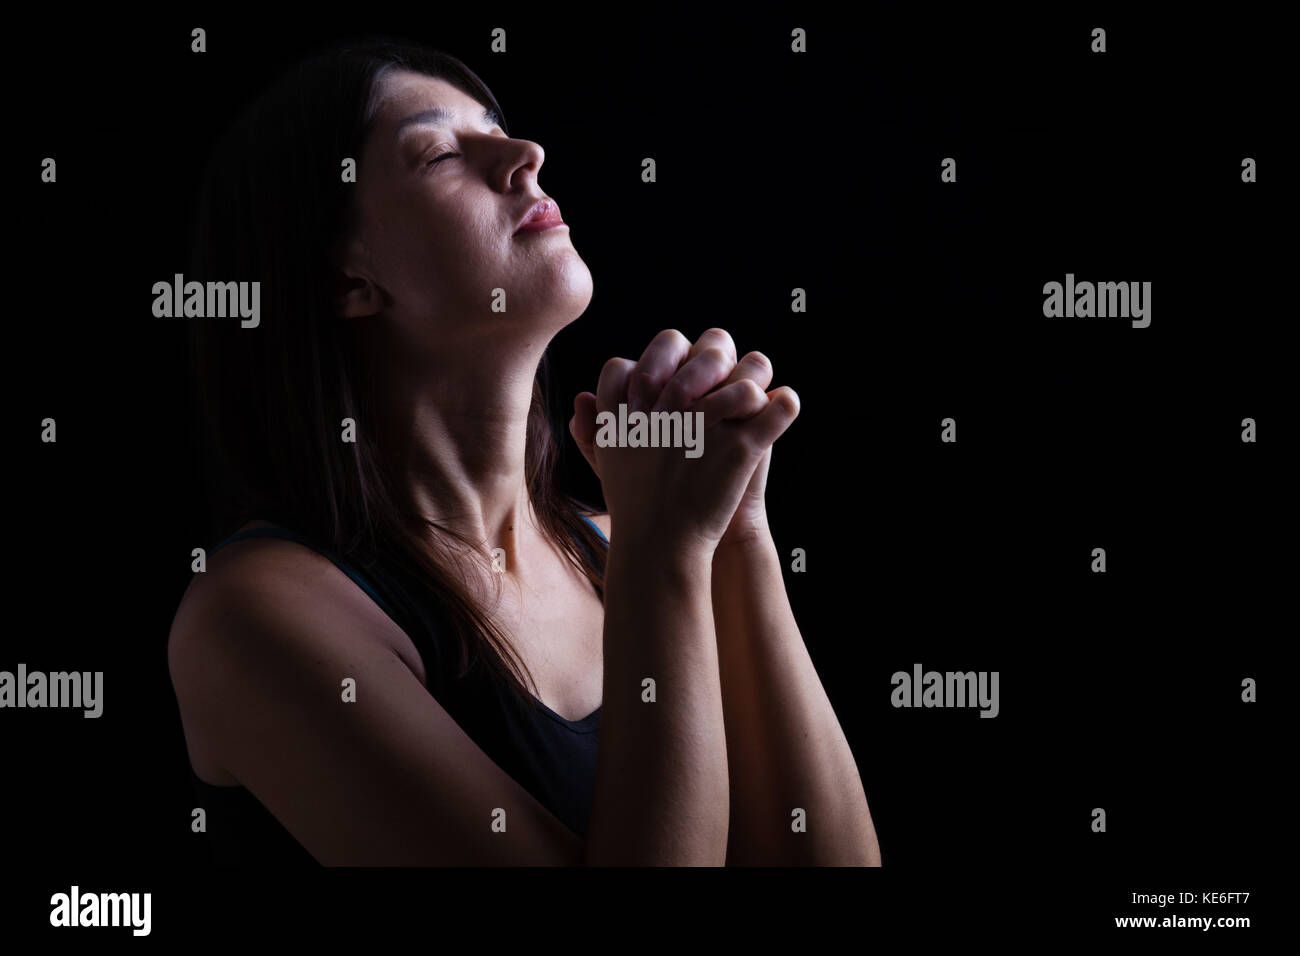 Gros plan d'une femme fidèle prier, mains jointes en prière, la tête, les yeux fermés dans l'inspiration religieuse. fond noir la prière religieuse chrétienne Banque D'Images